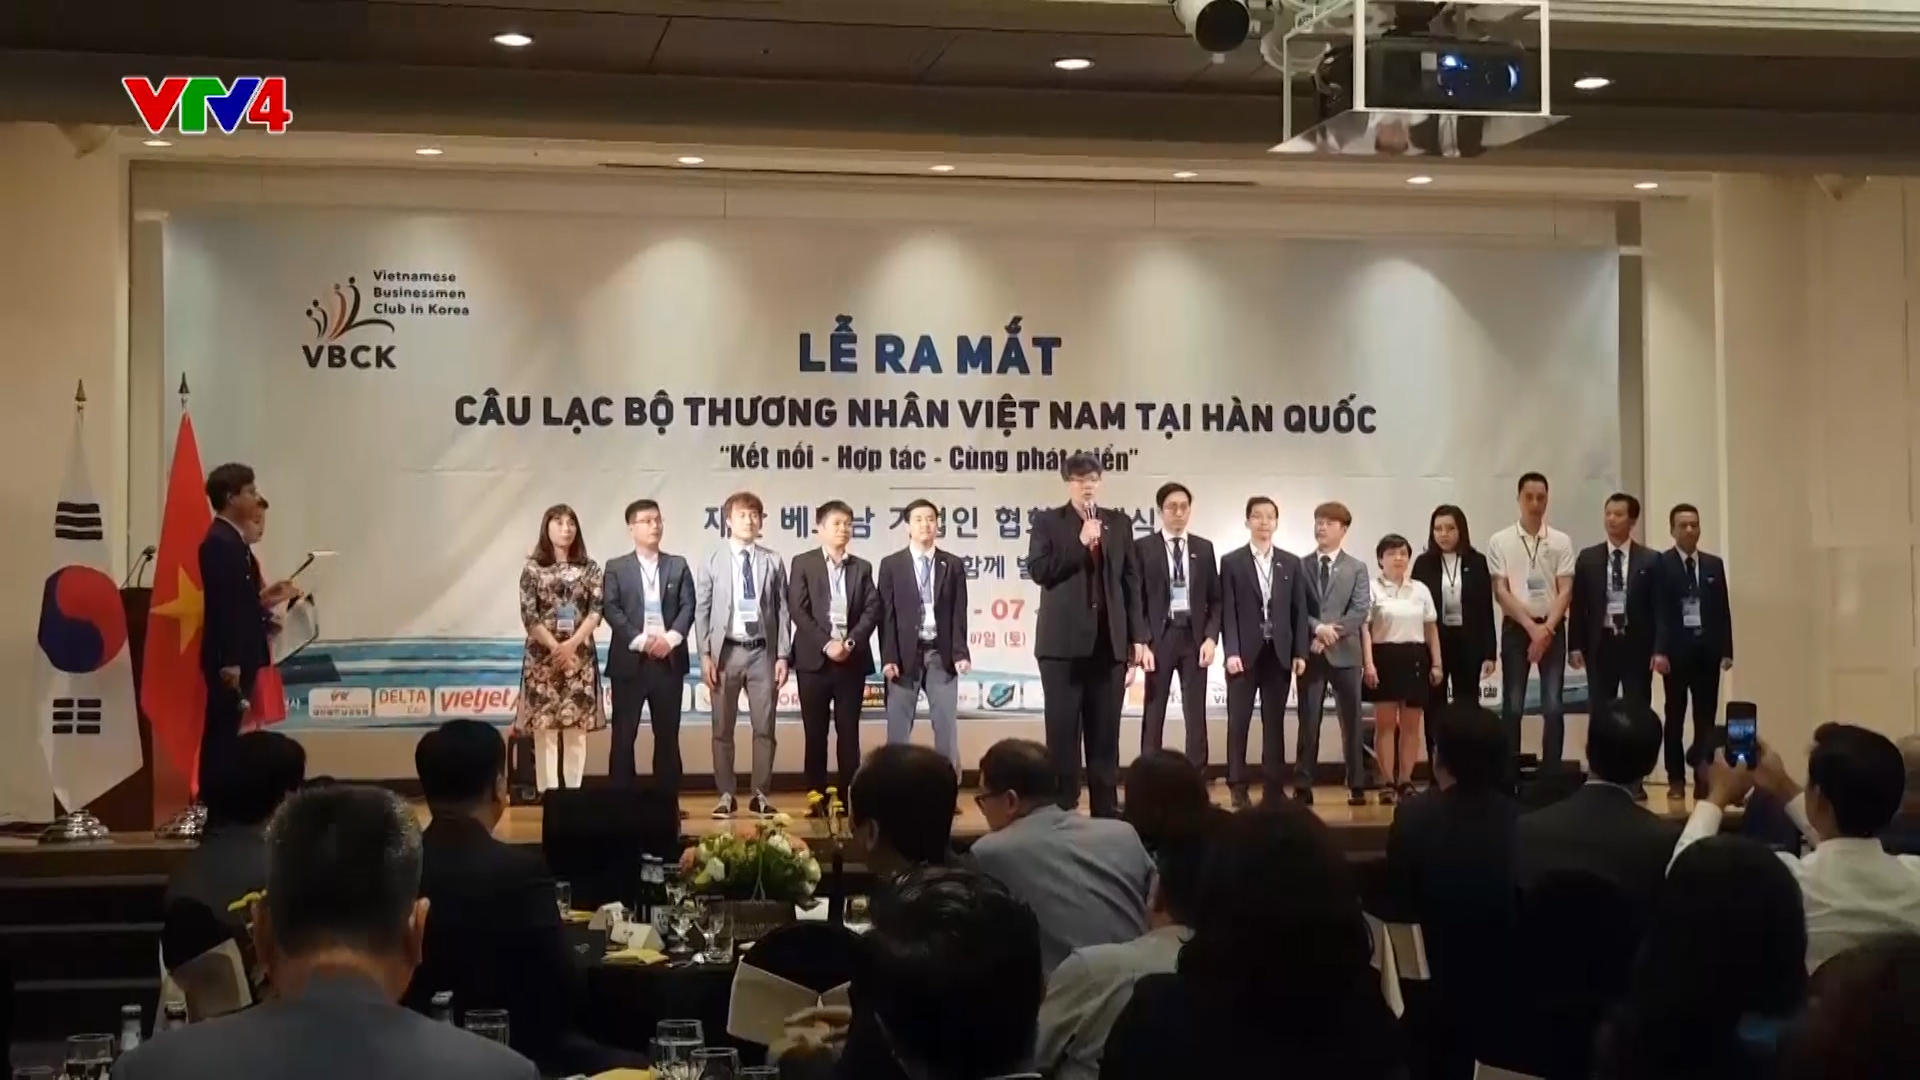 Ra mắt Câu lạc bộ thương nhân Việt Nam tại Hàn Quốc